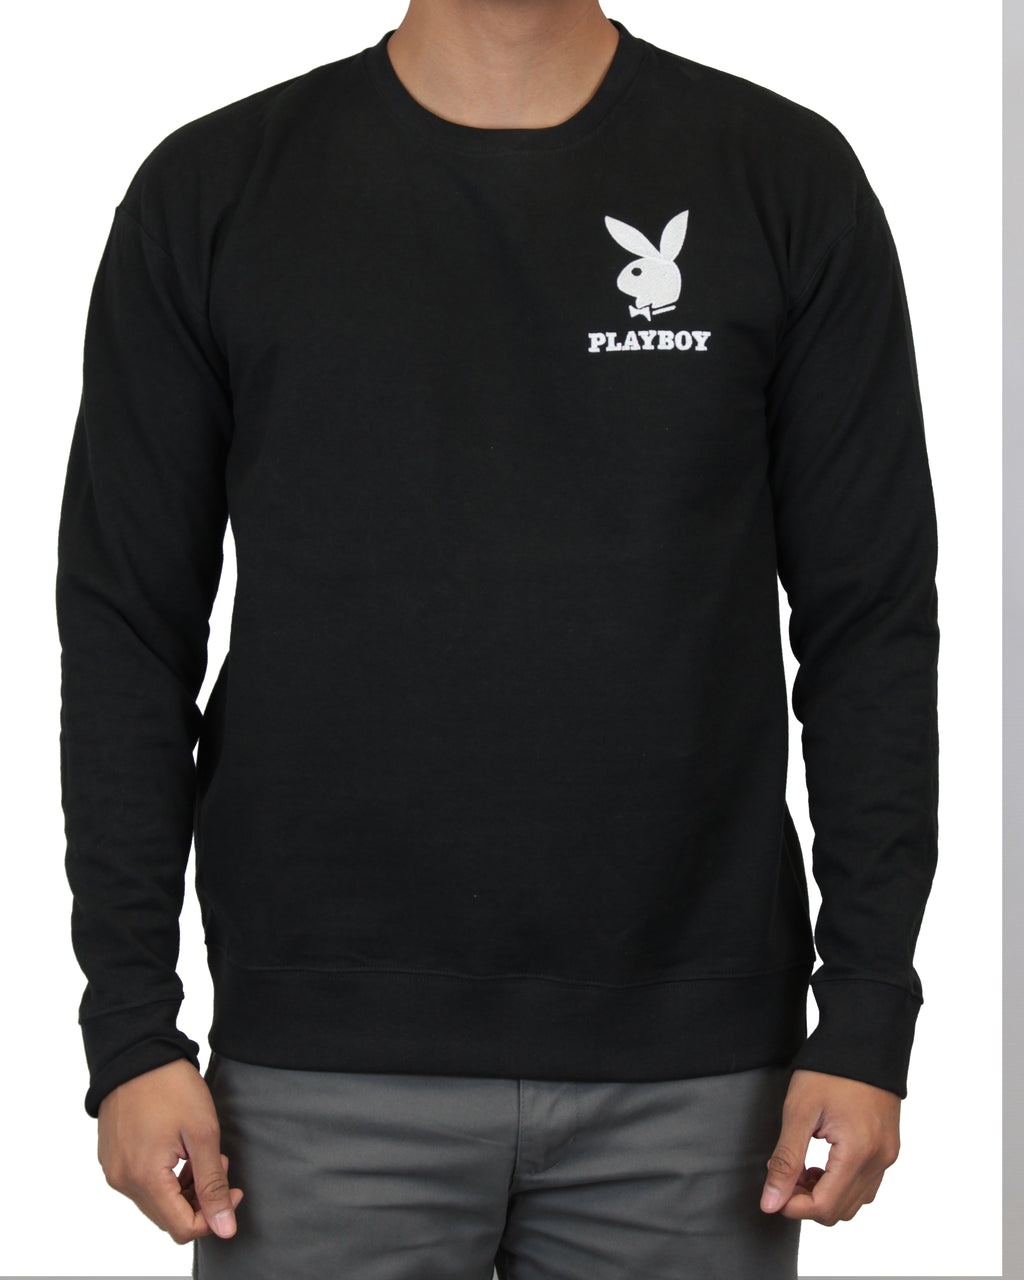 Playboy Embroidered Logo Sweatshirt